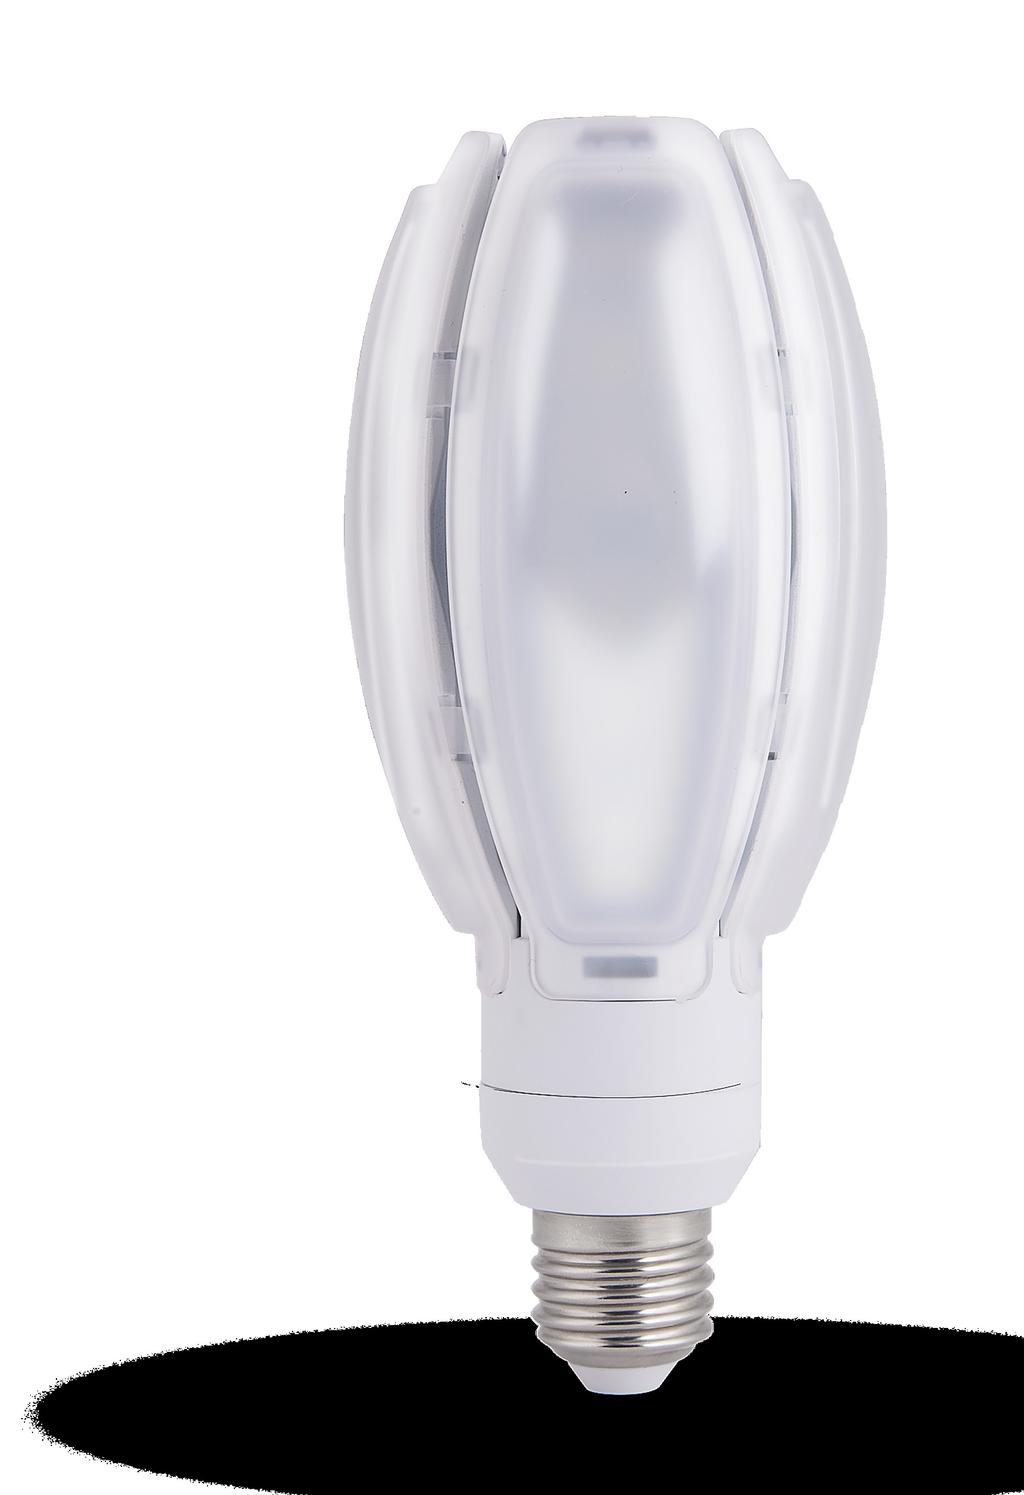 OLIVLAMPA LED-lampan som ersätter 80-125W kvicksilverlampor utan några ingrepp i armaturen!